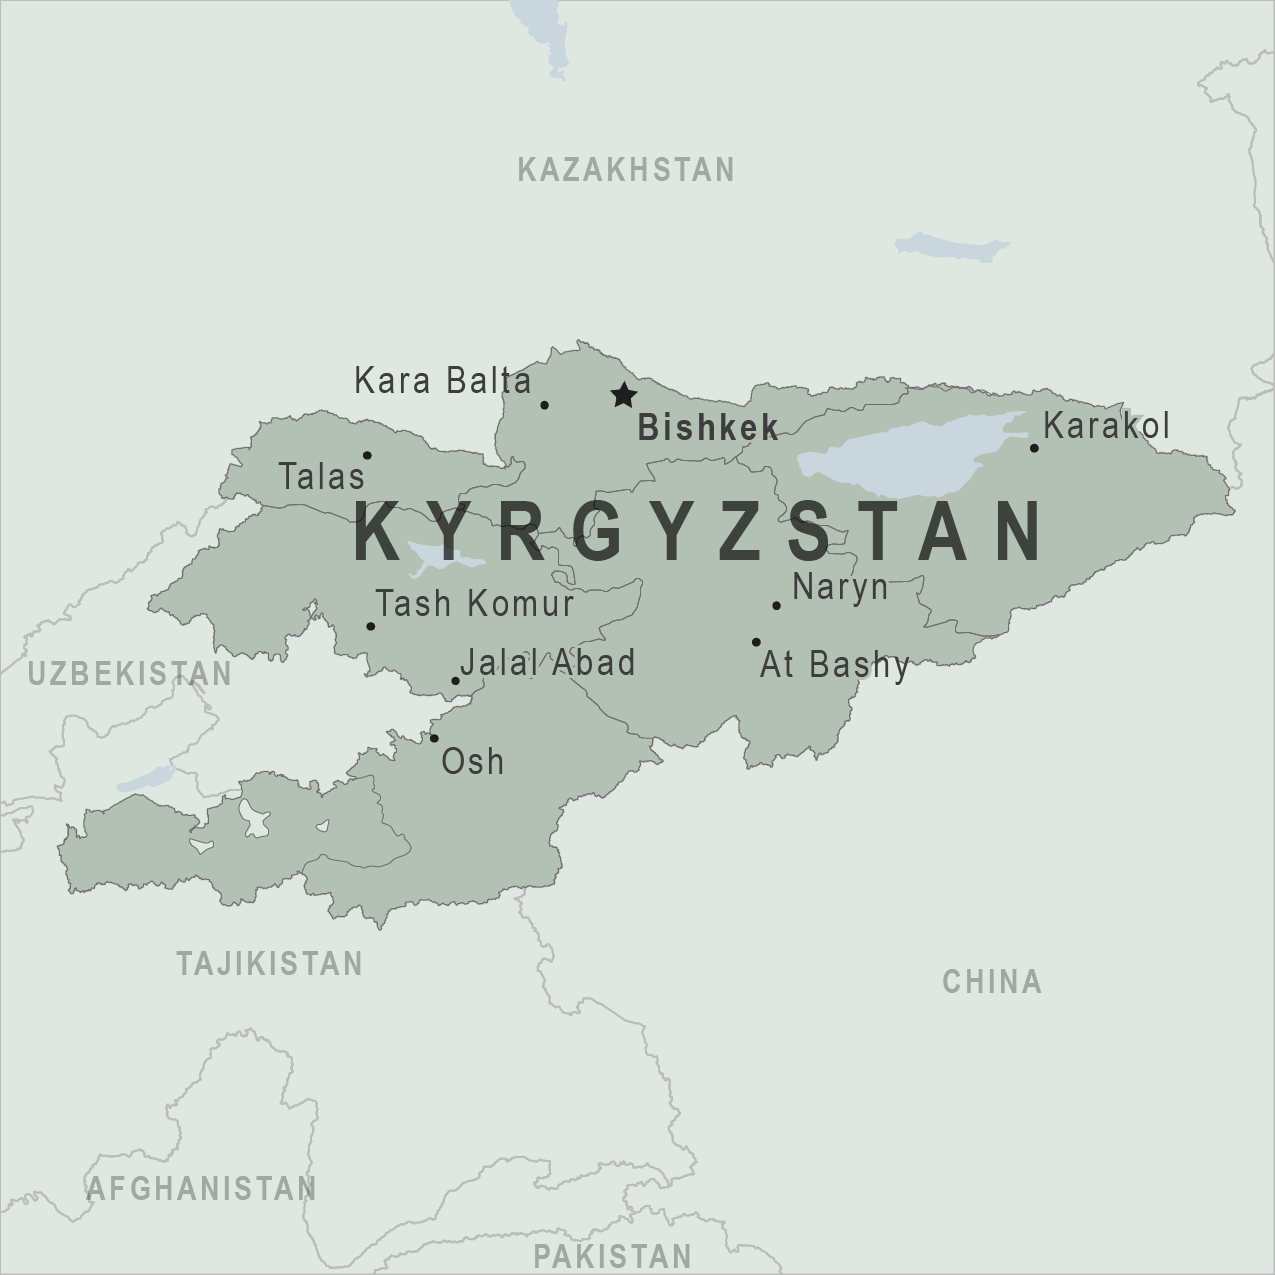 https://www.wciecedutech.com/wp-content/uploads/2022/12/About-Kyrgyzstan.png